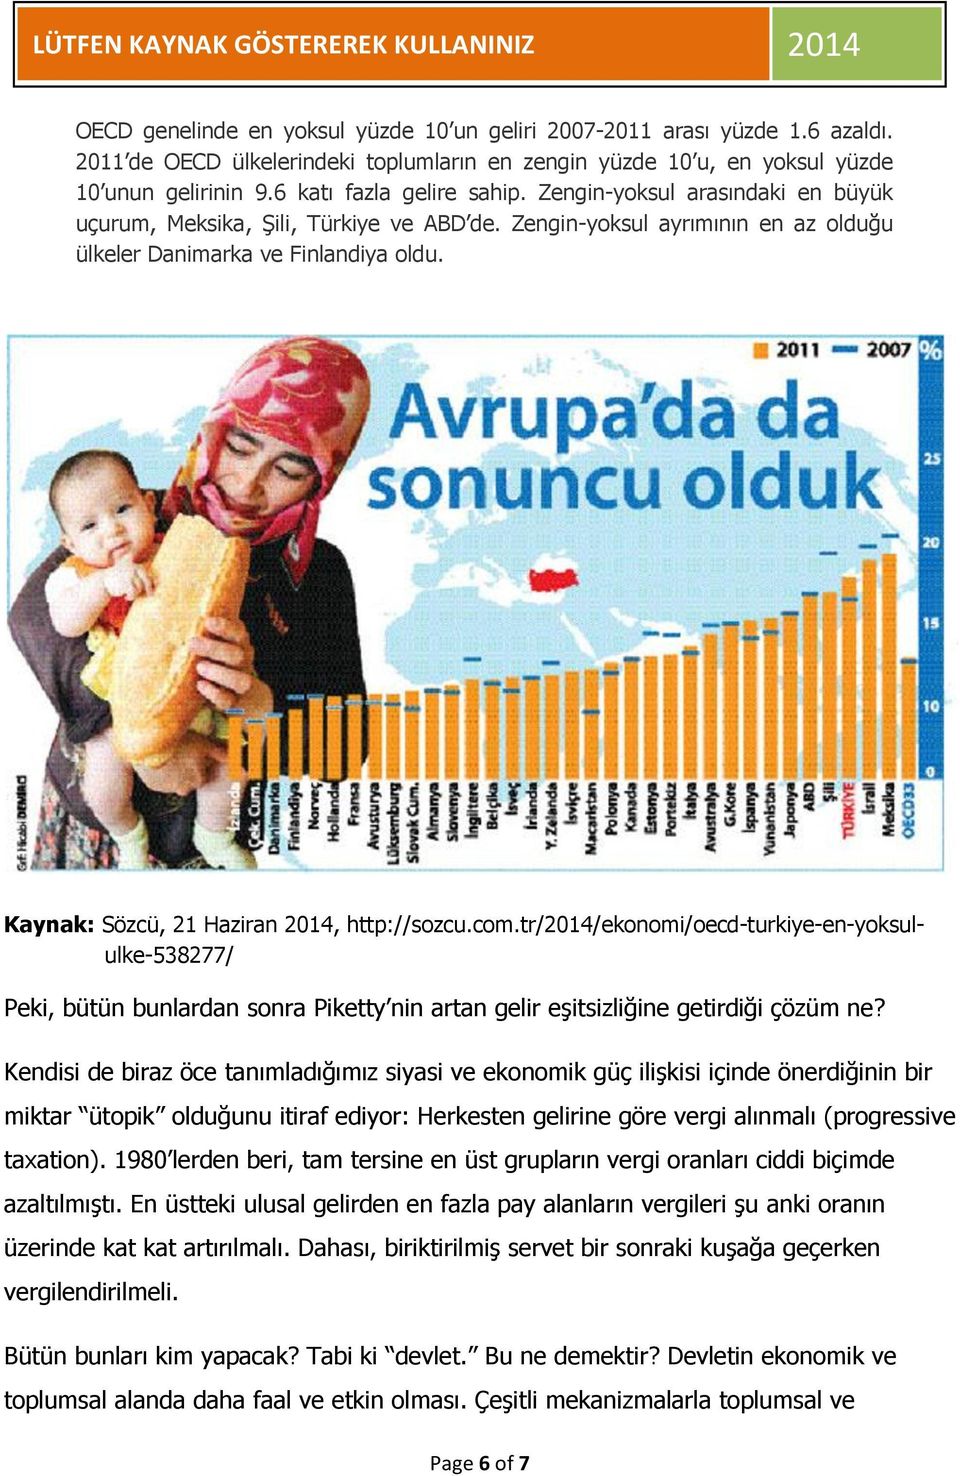 Kaynak: Sözcü, 21 Haziran 2014, http://sozcu.com.tr/2014/ekonomi/oecd-turkiye-en-yoksululke-538277/ Peki, bütün bunlardan sonra Piketty nin artan gelir eşitsizliğine getirdiği çözüm ne?